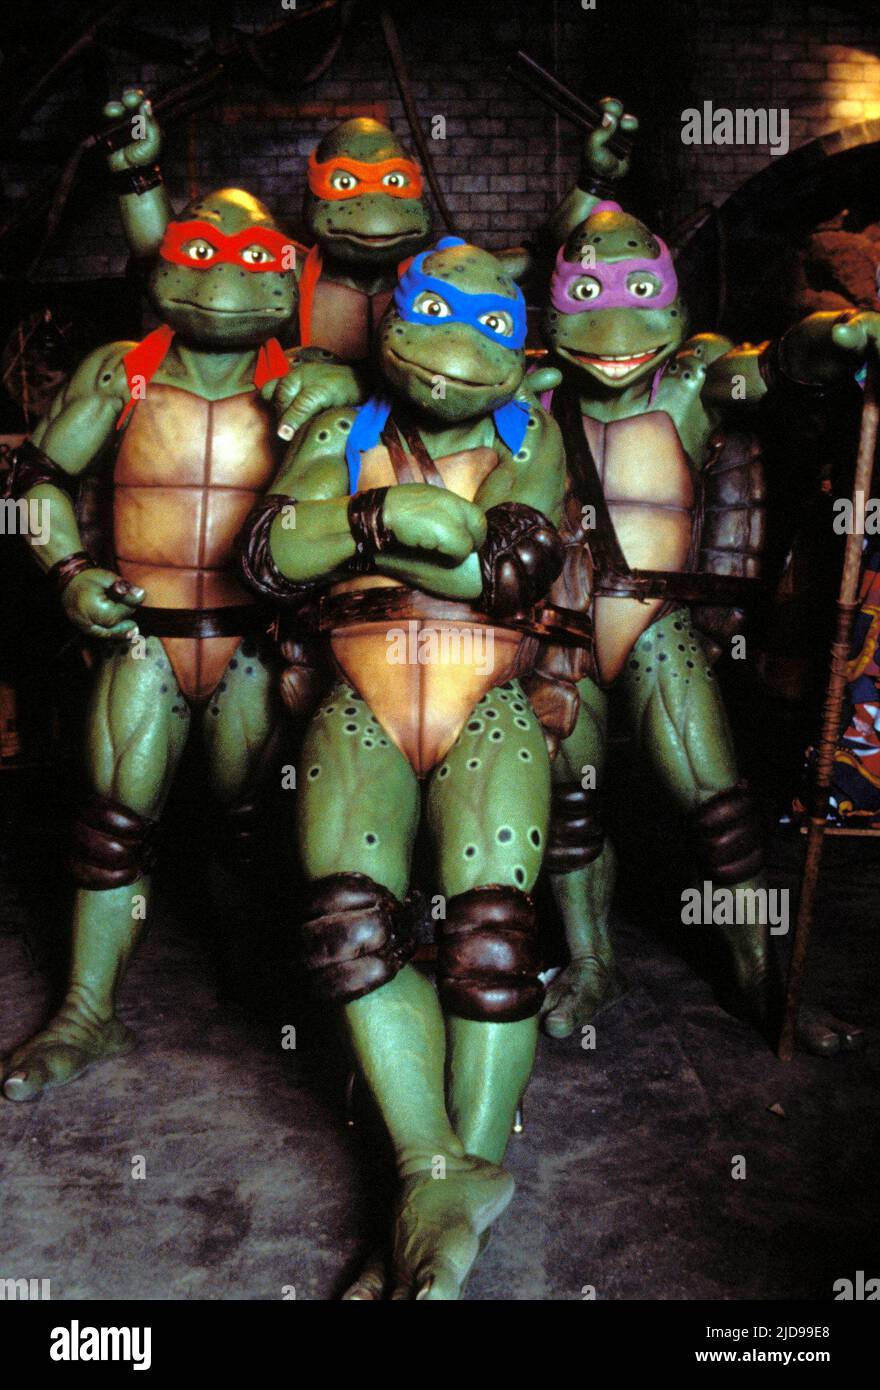 23 photos et images de Donatello Tortue Ninja - Getty Images